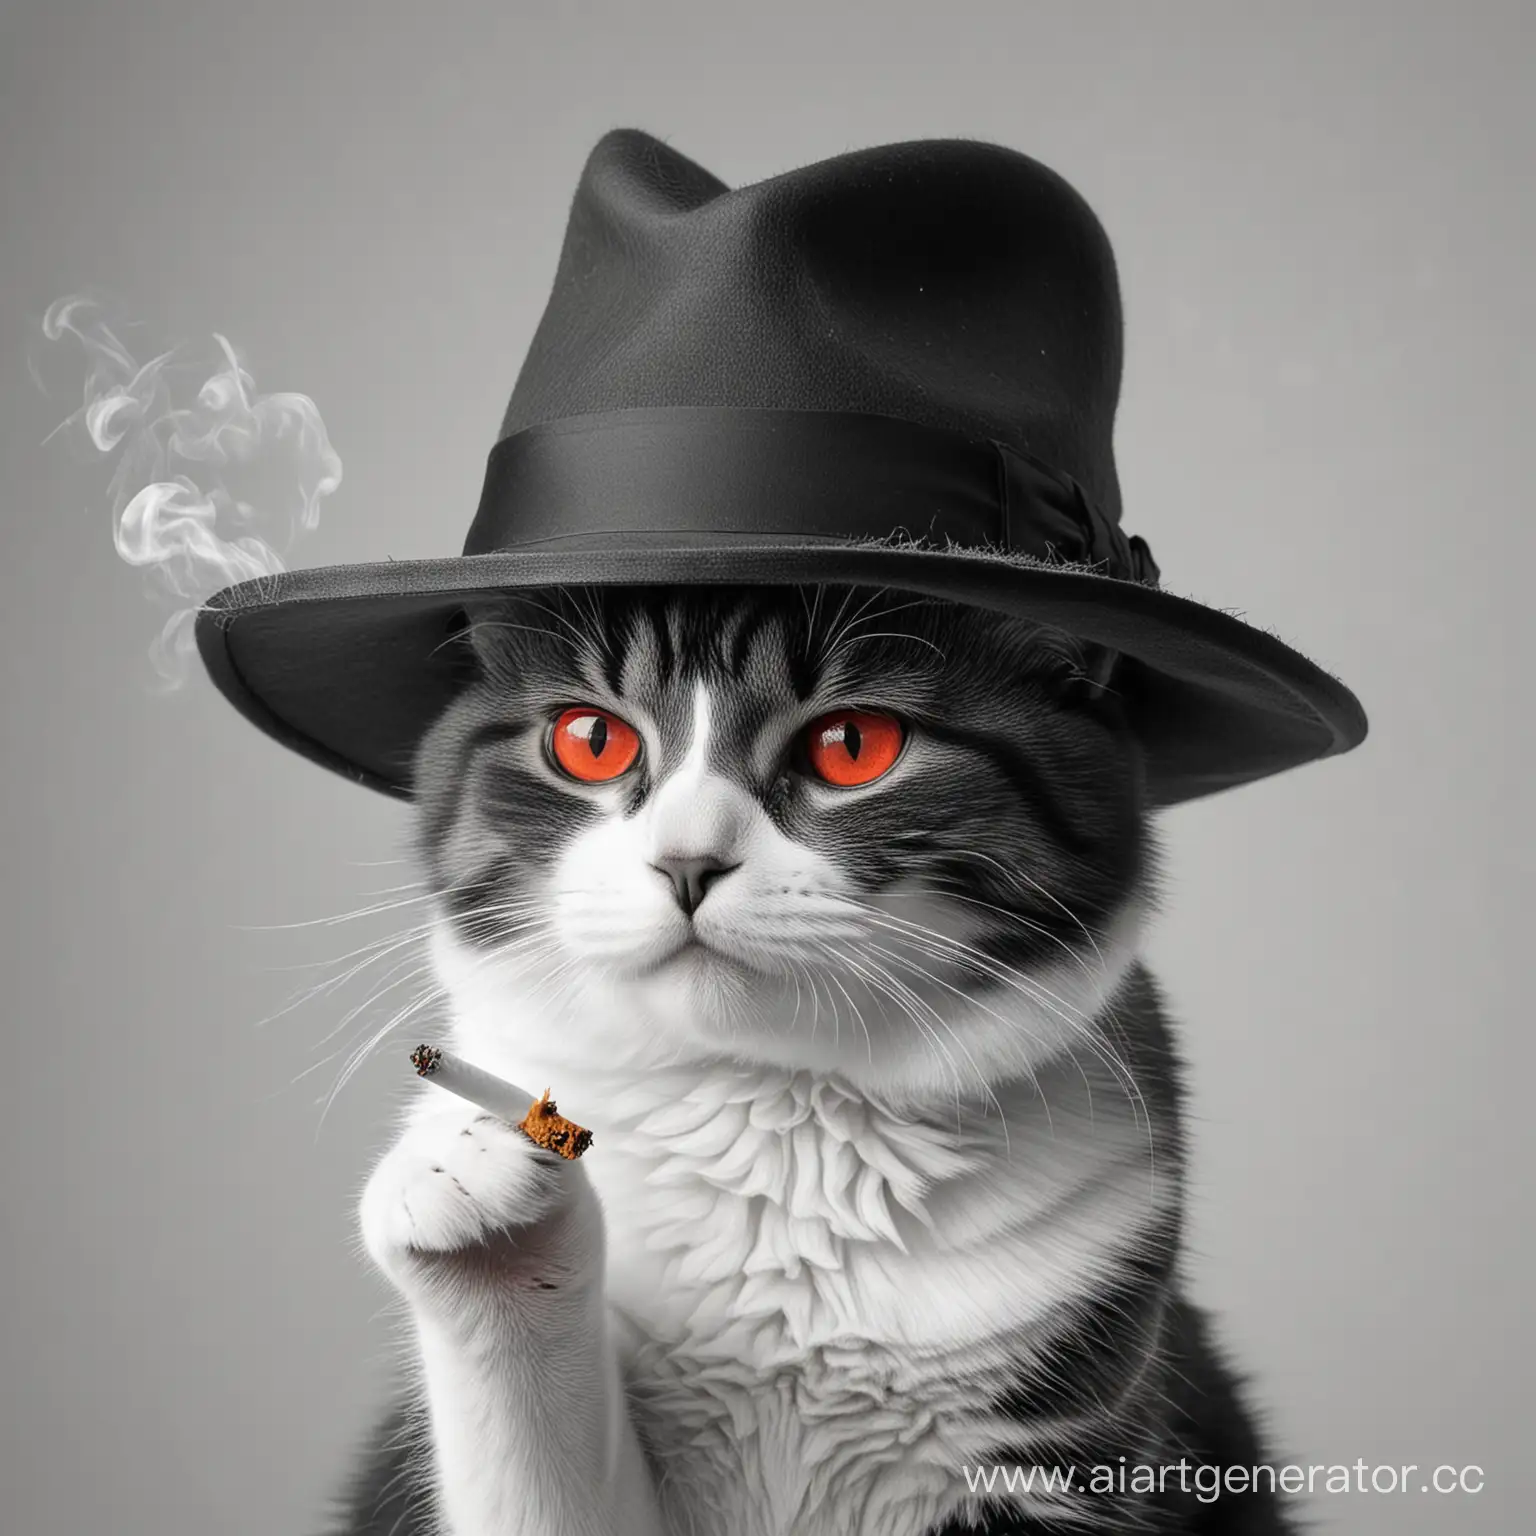 Mischievous-Feline-in-Stylish-Hat-Enjoying-a-Cigarette